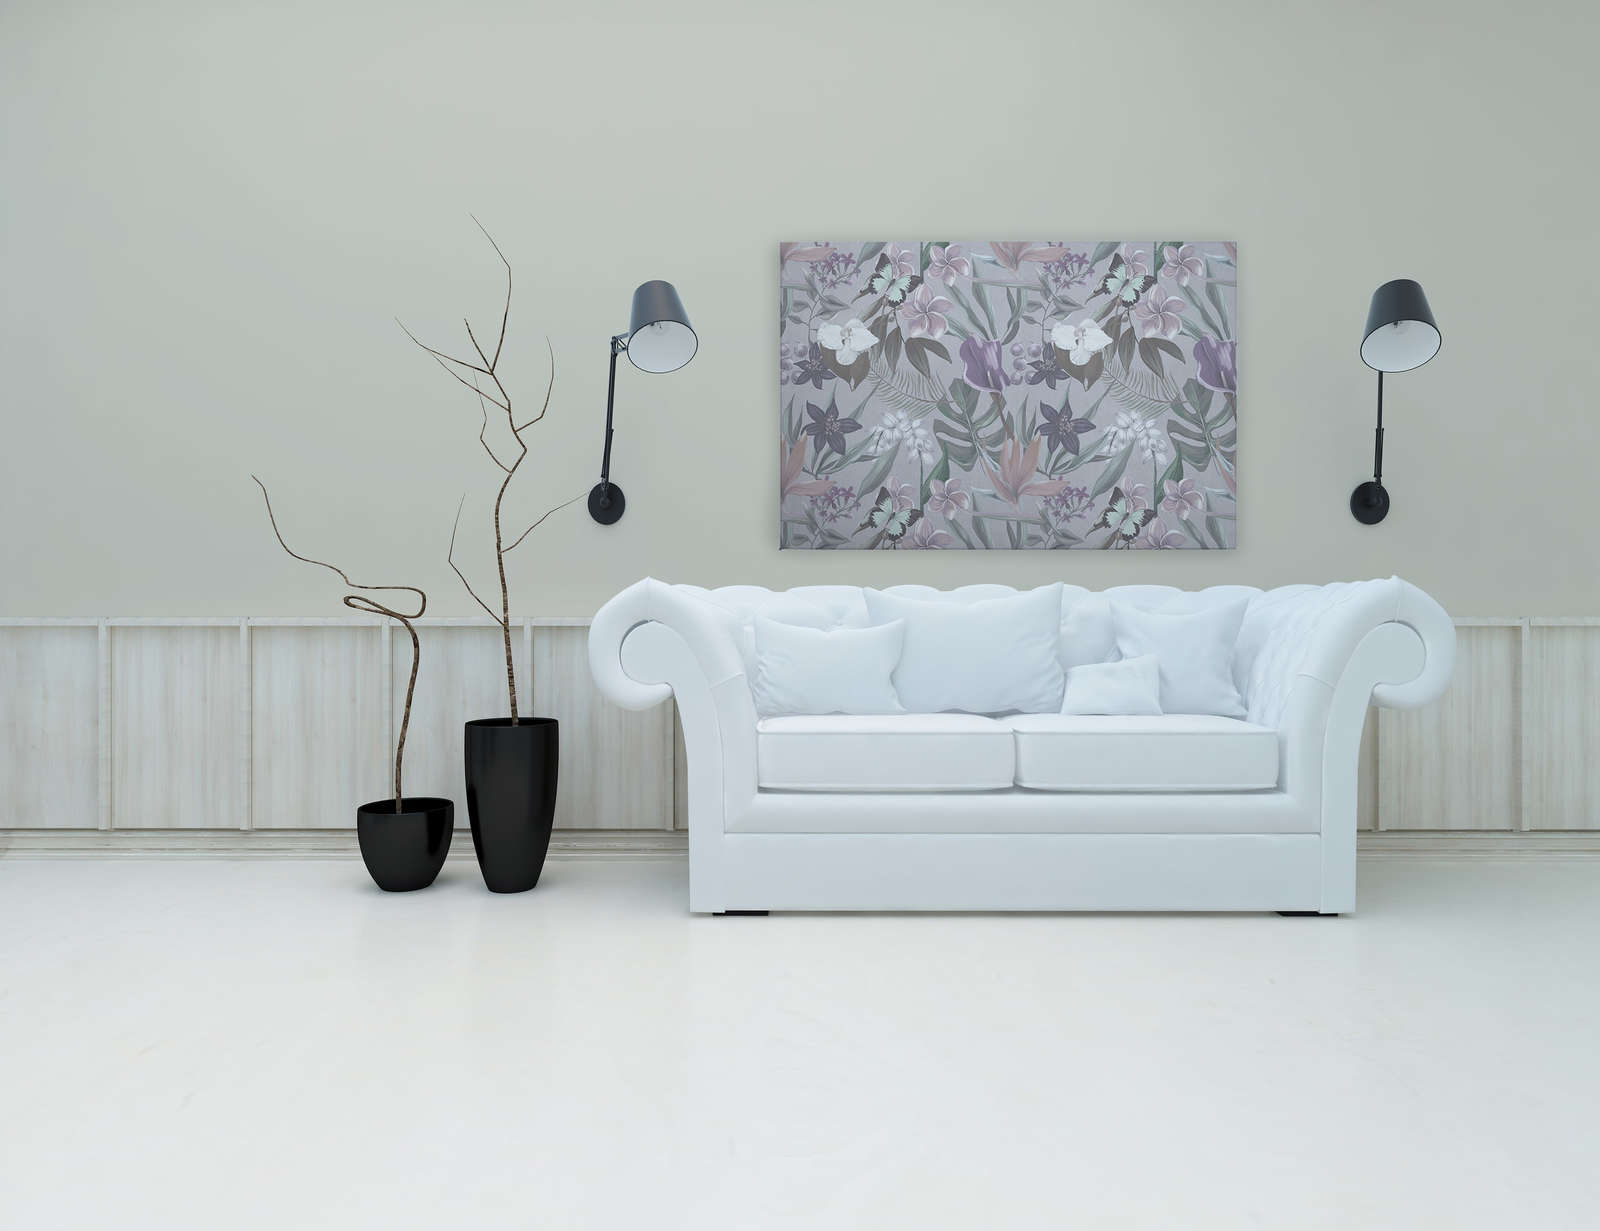             Floral Jungle Canvas Schilderij getekend | roze, wit - 1.20 m x 0.80 m
        